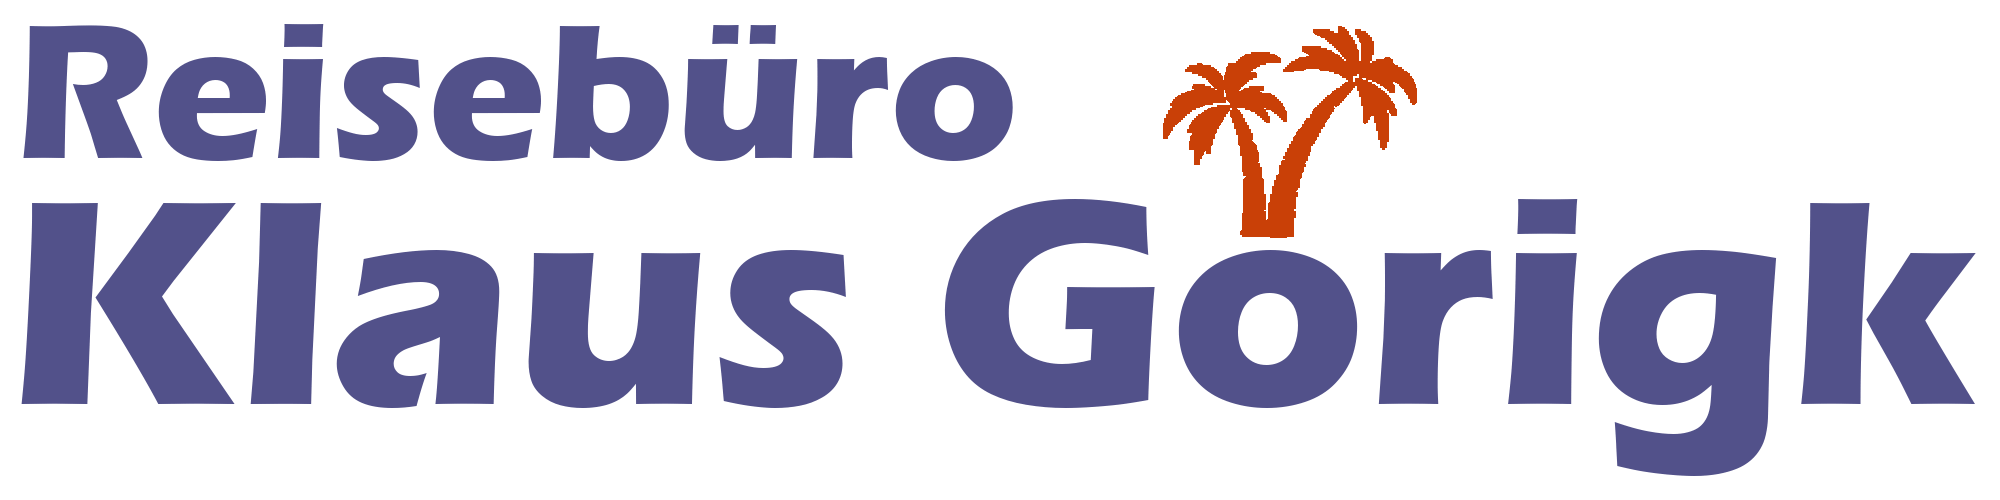 Reisebüro Klaus Görigk Logo